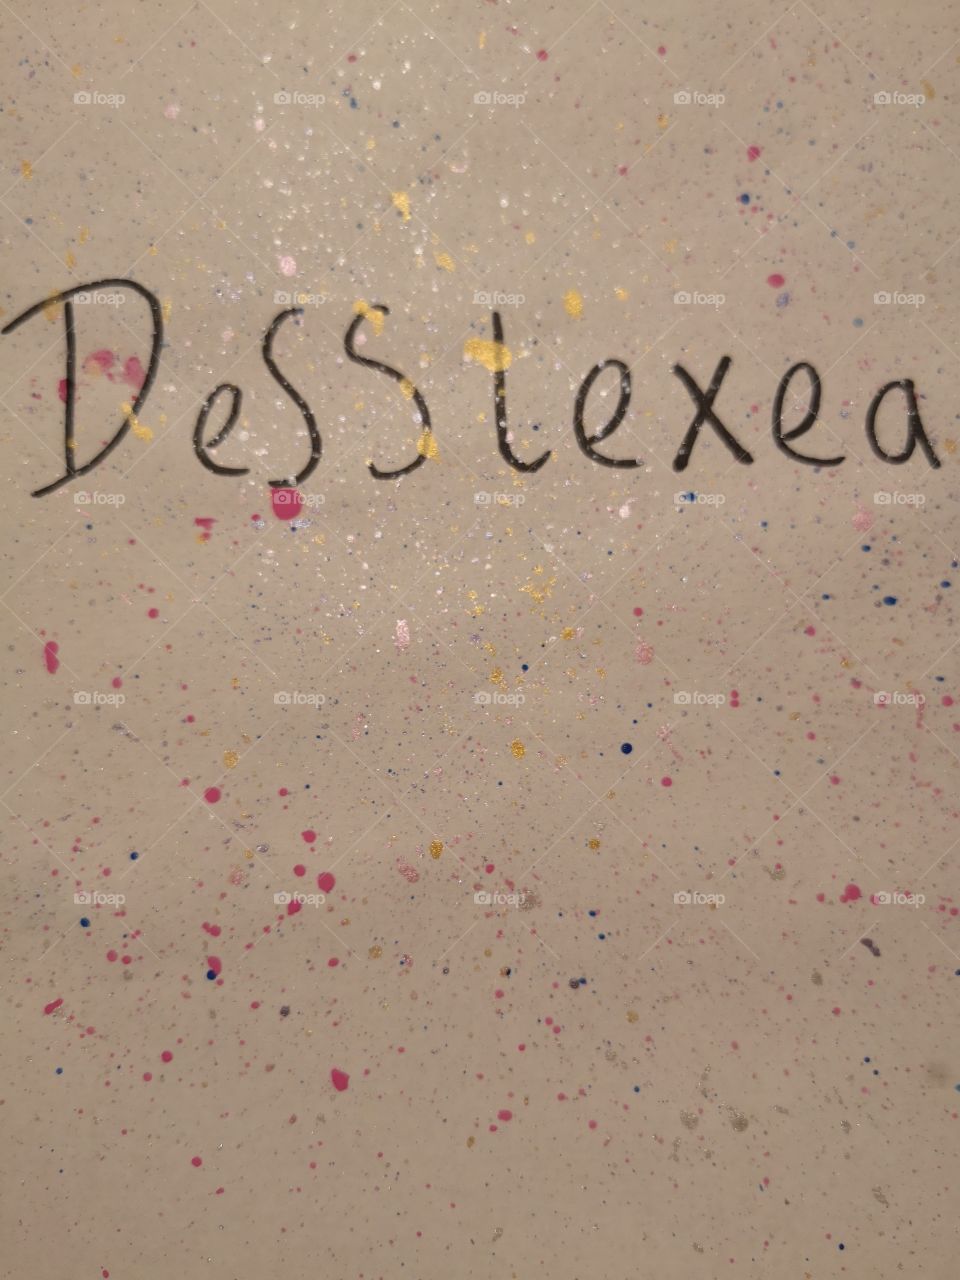 dyslexia art school learning